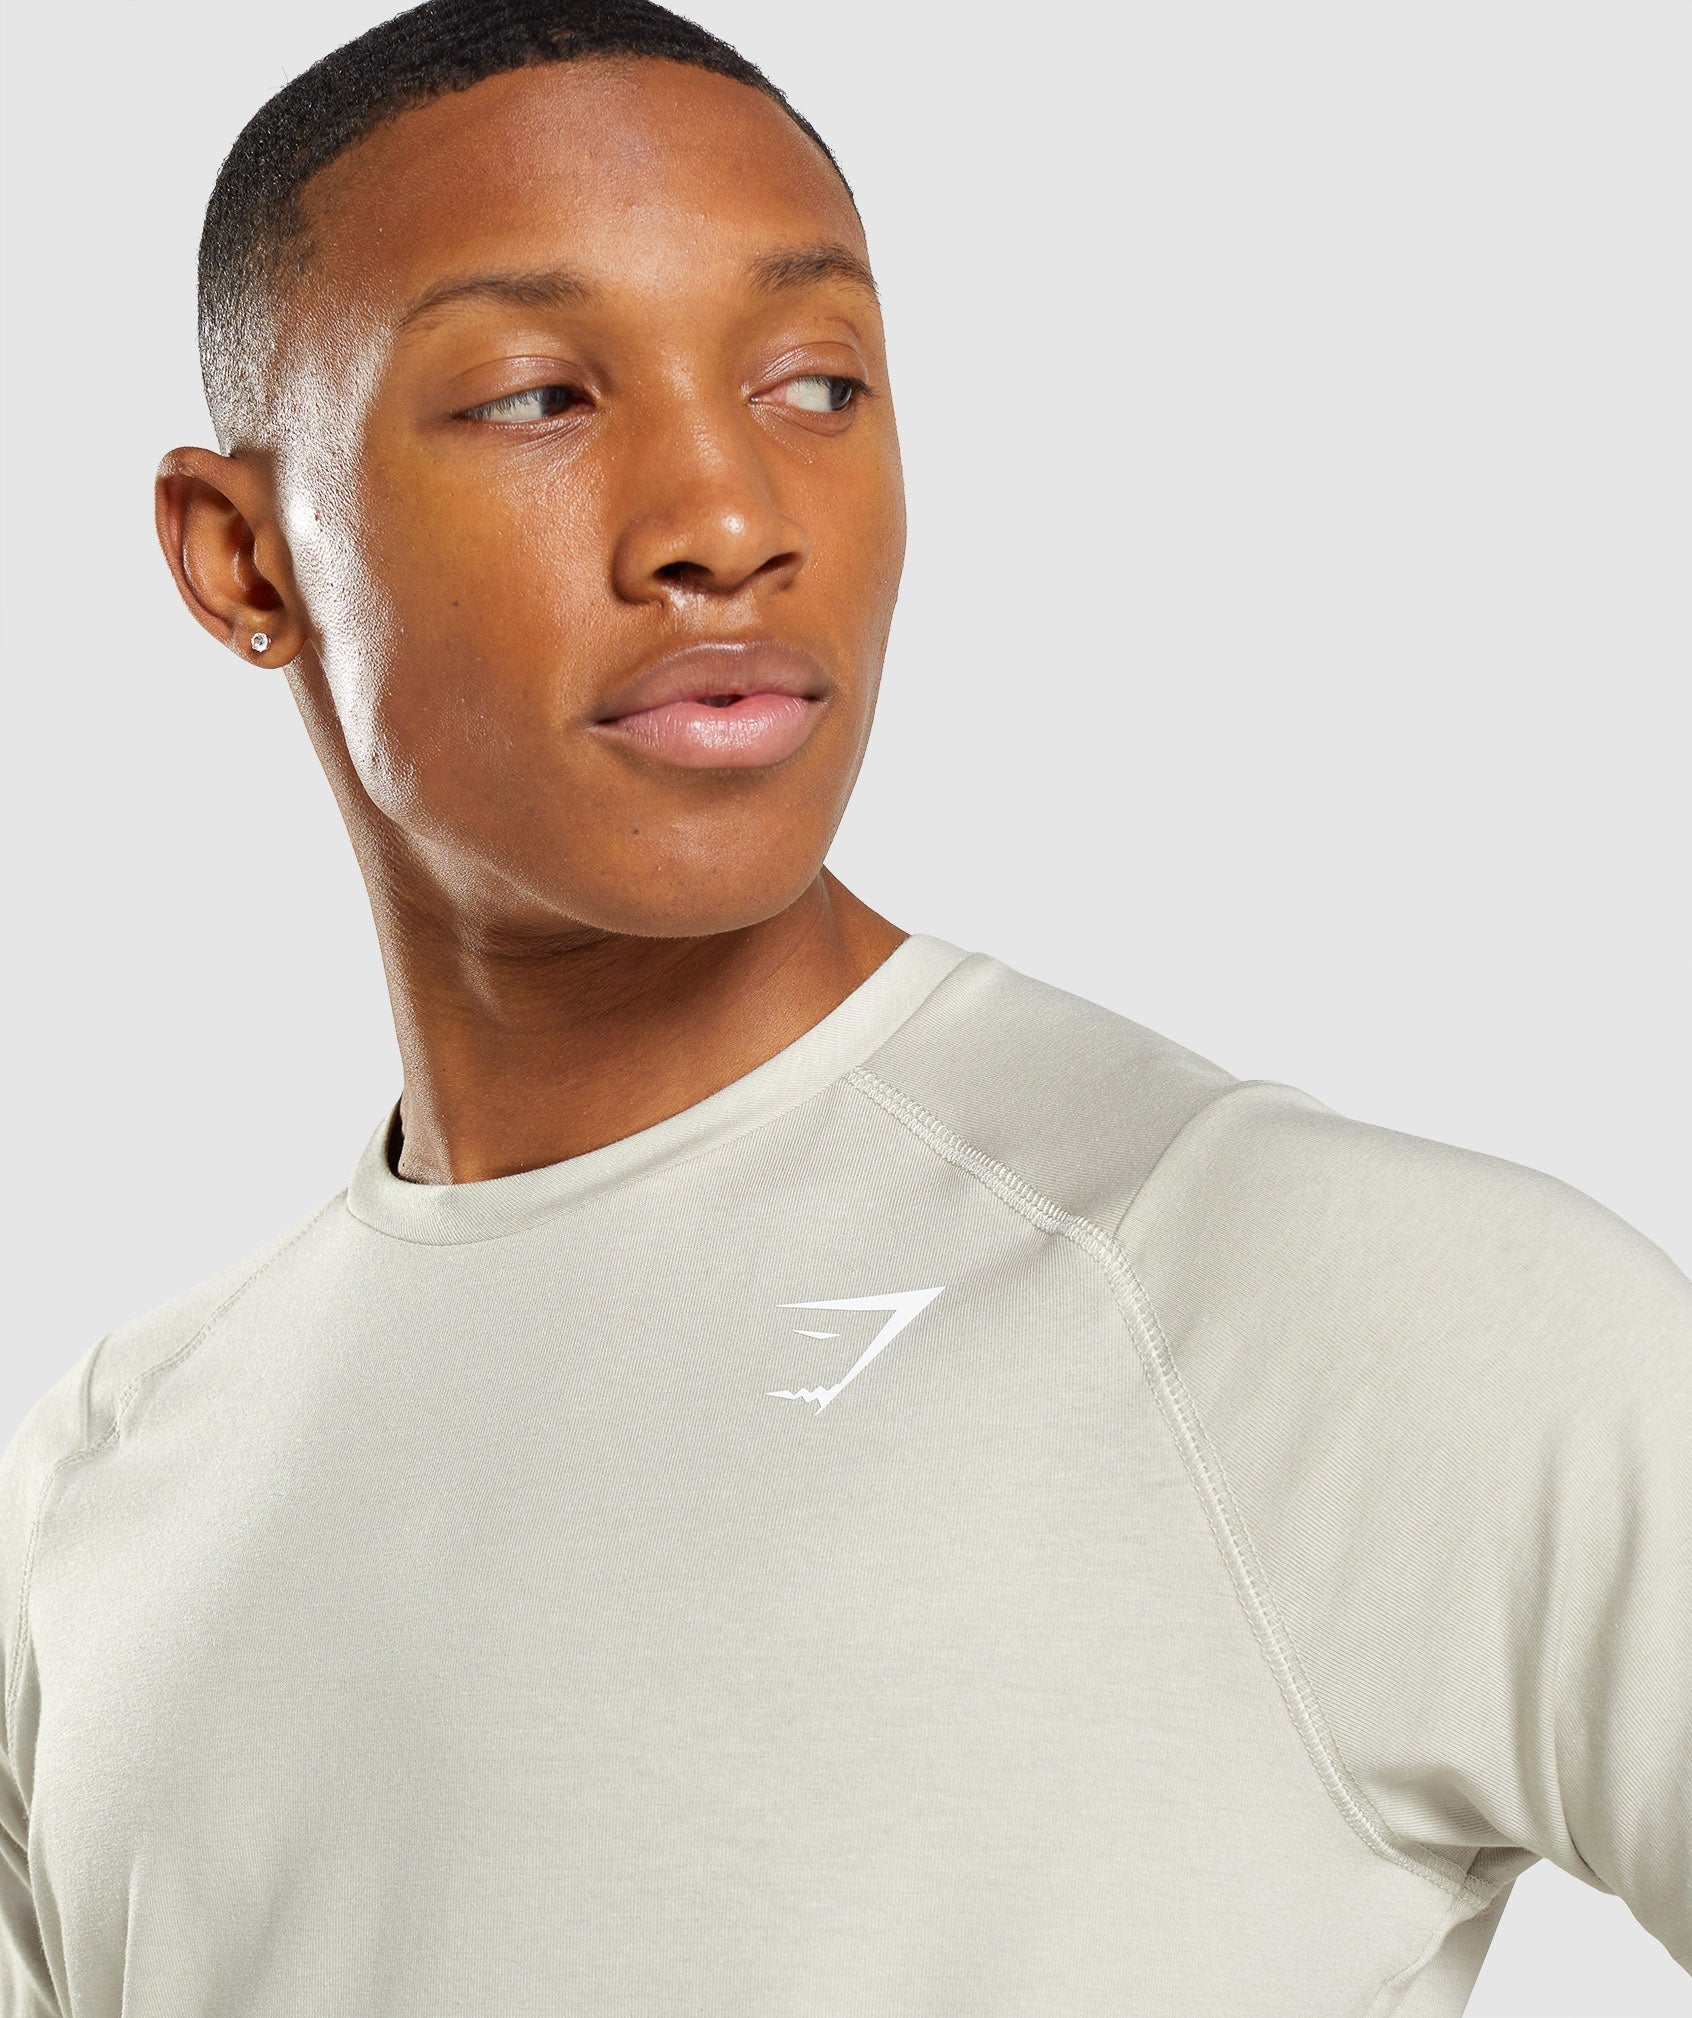 Gymshark Bold T-Shirt - Light Grey